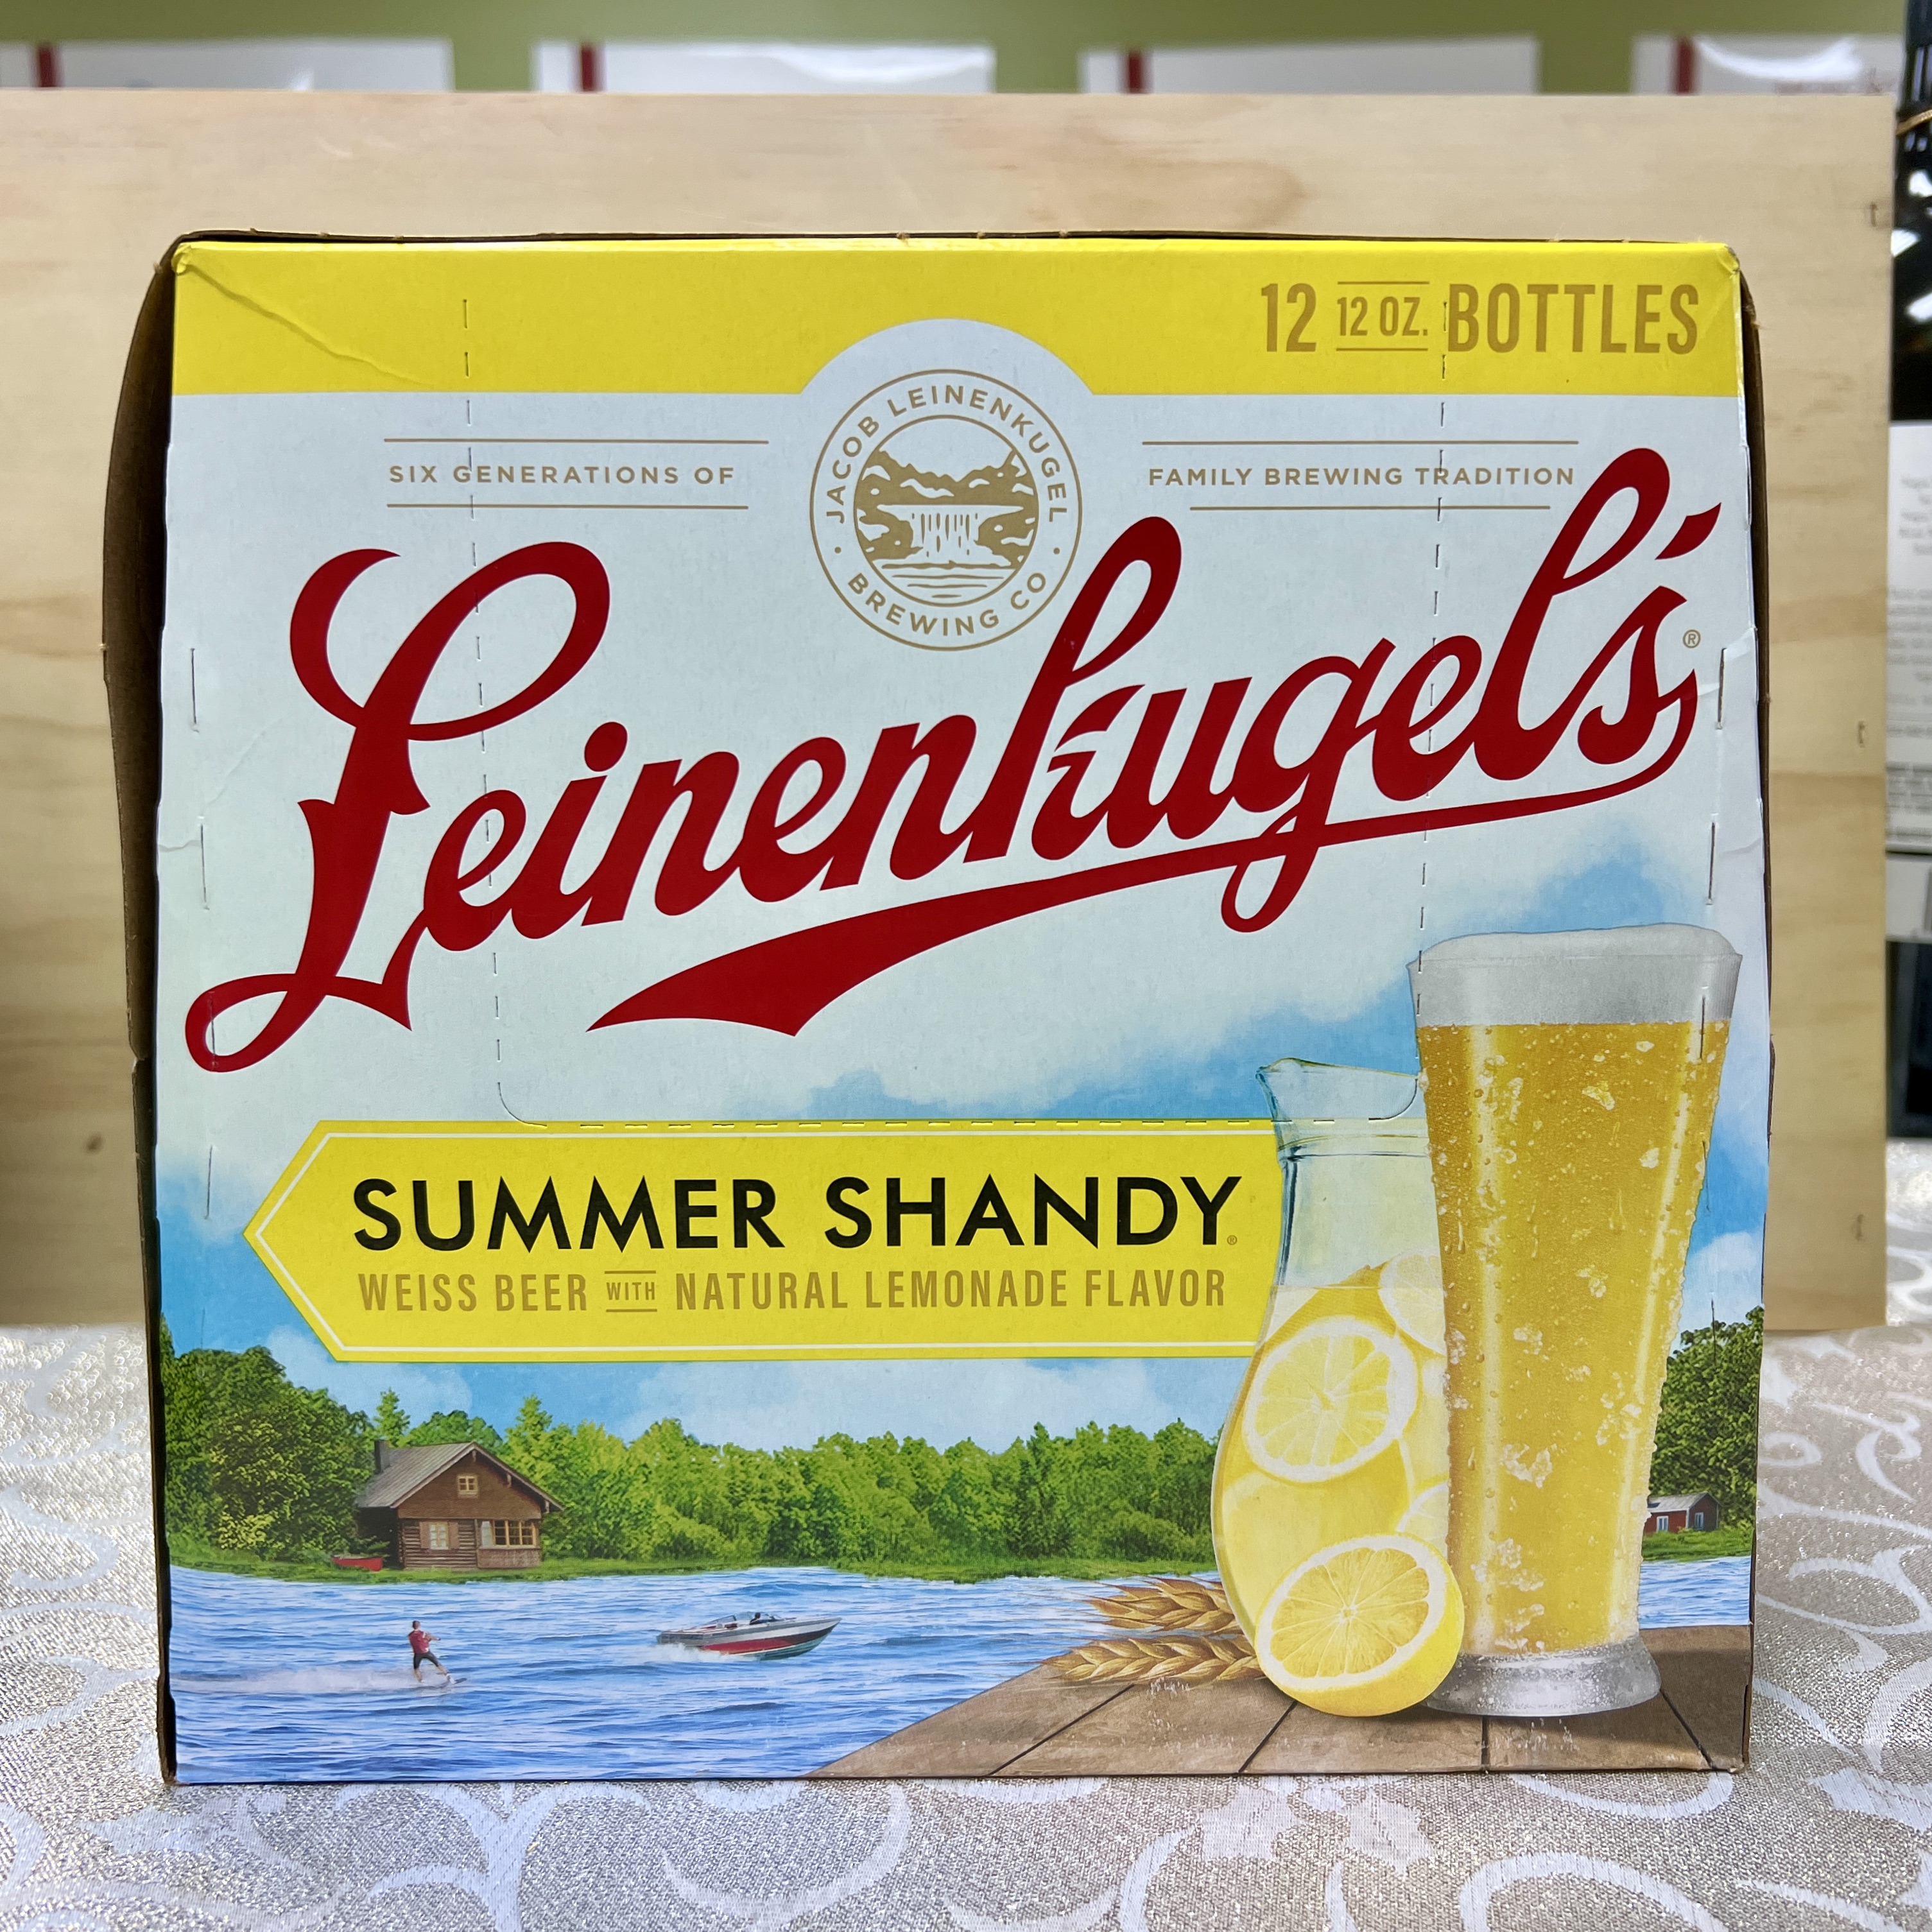 Leinenkugels Summer Shandy Weiss with Lemon flavor 12 x 12oz bottles